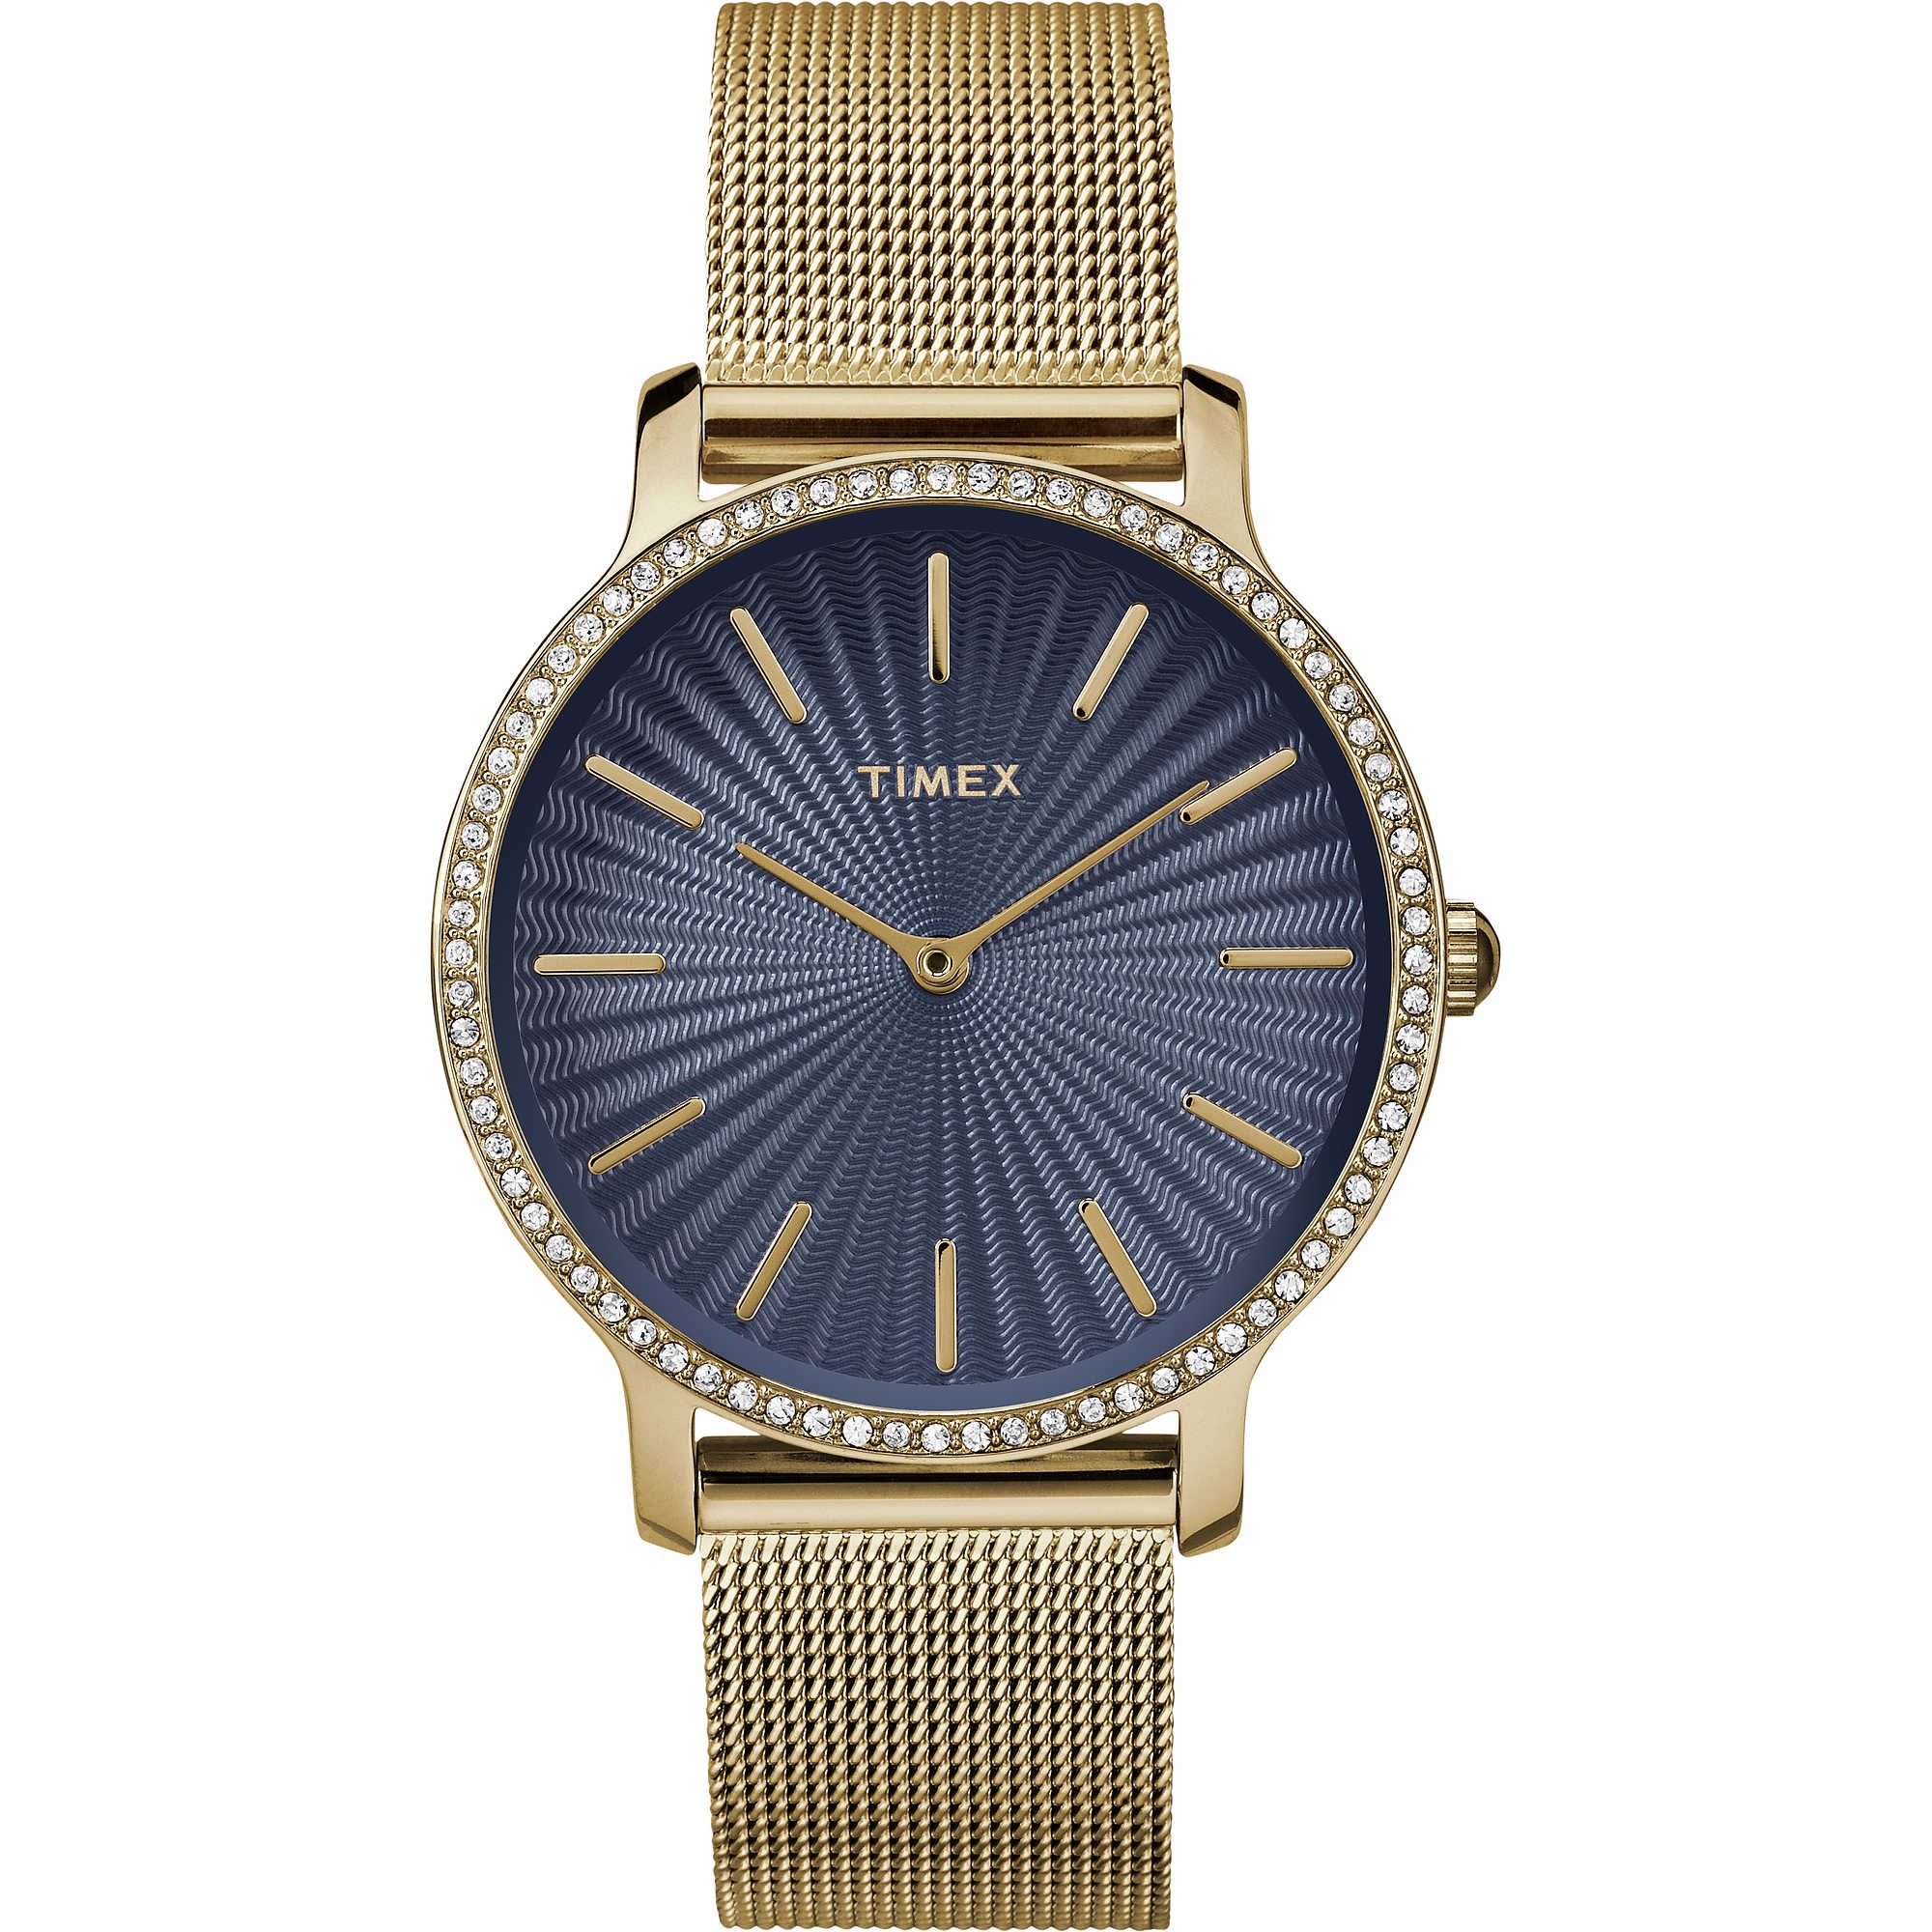 TIMEX: Orologio donna solo tempo della collezione STARLIGHT con cristalli SWAROVSKI, TW2R50600